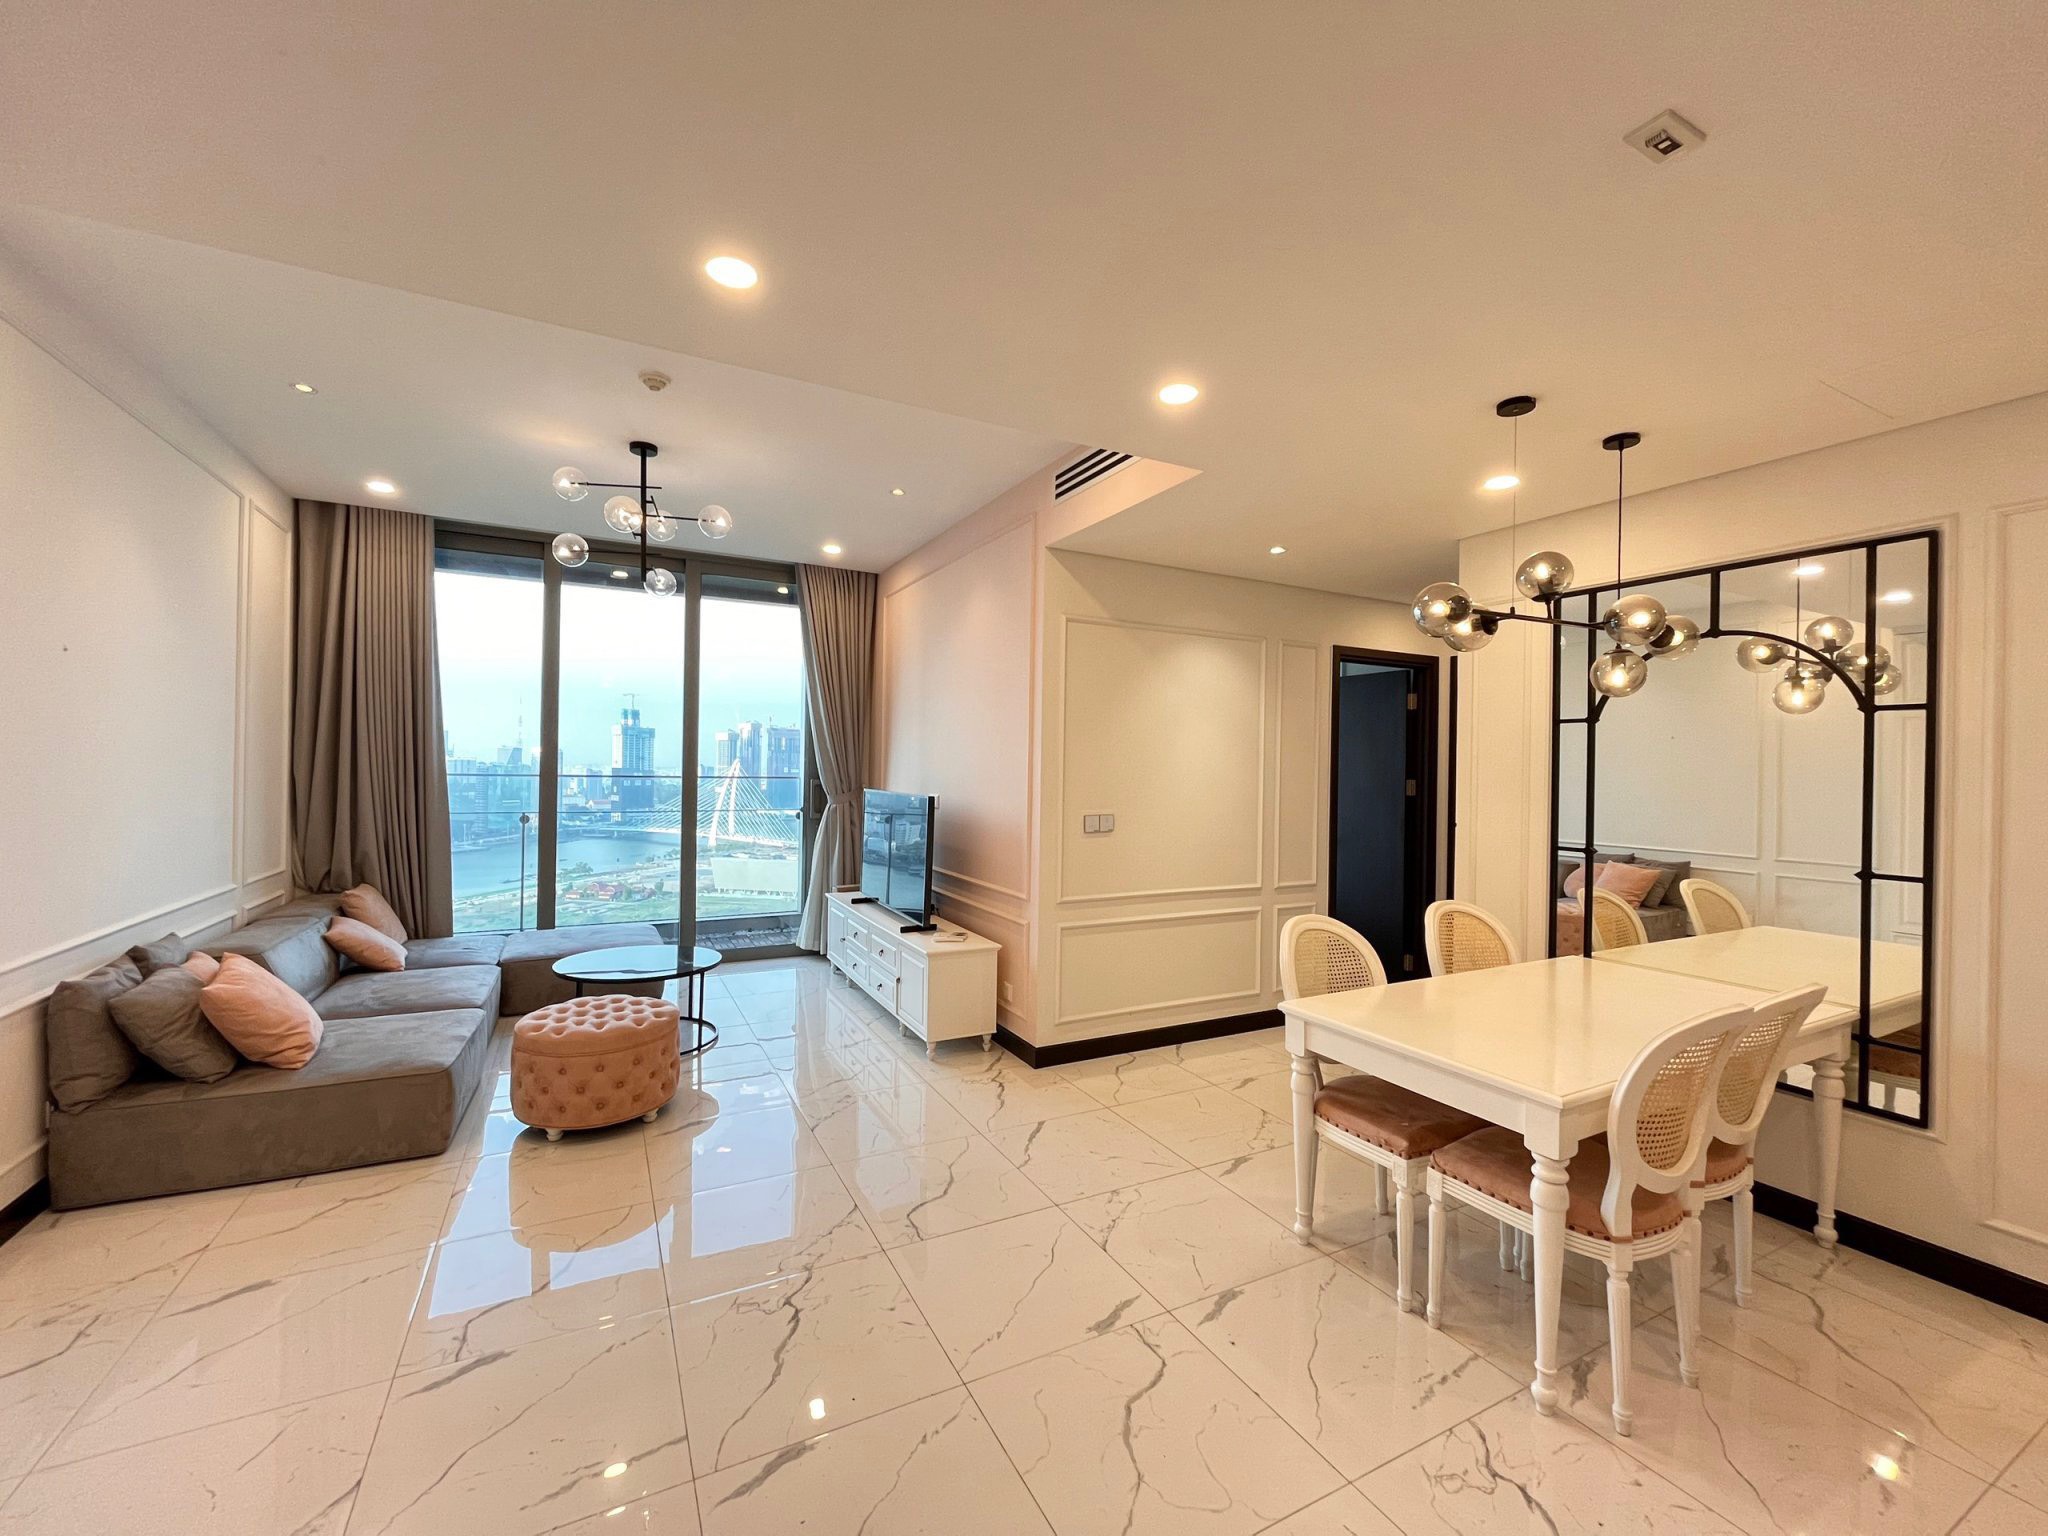 Cho thuê căn hộ hạng sang EMPIRE City Thủ Thiêm-2PN-giá 30tr, View sông SG mát mẻ trong lành - Ảnh 5